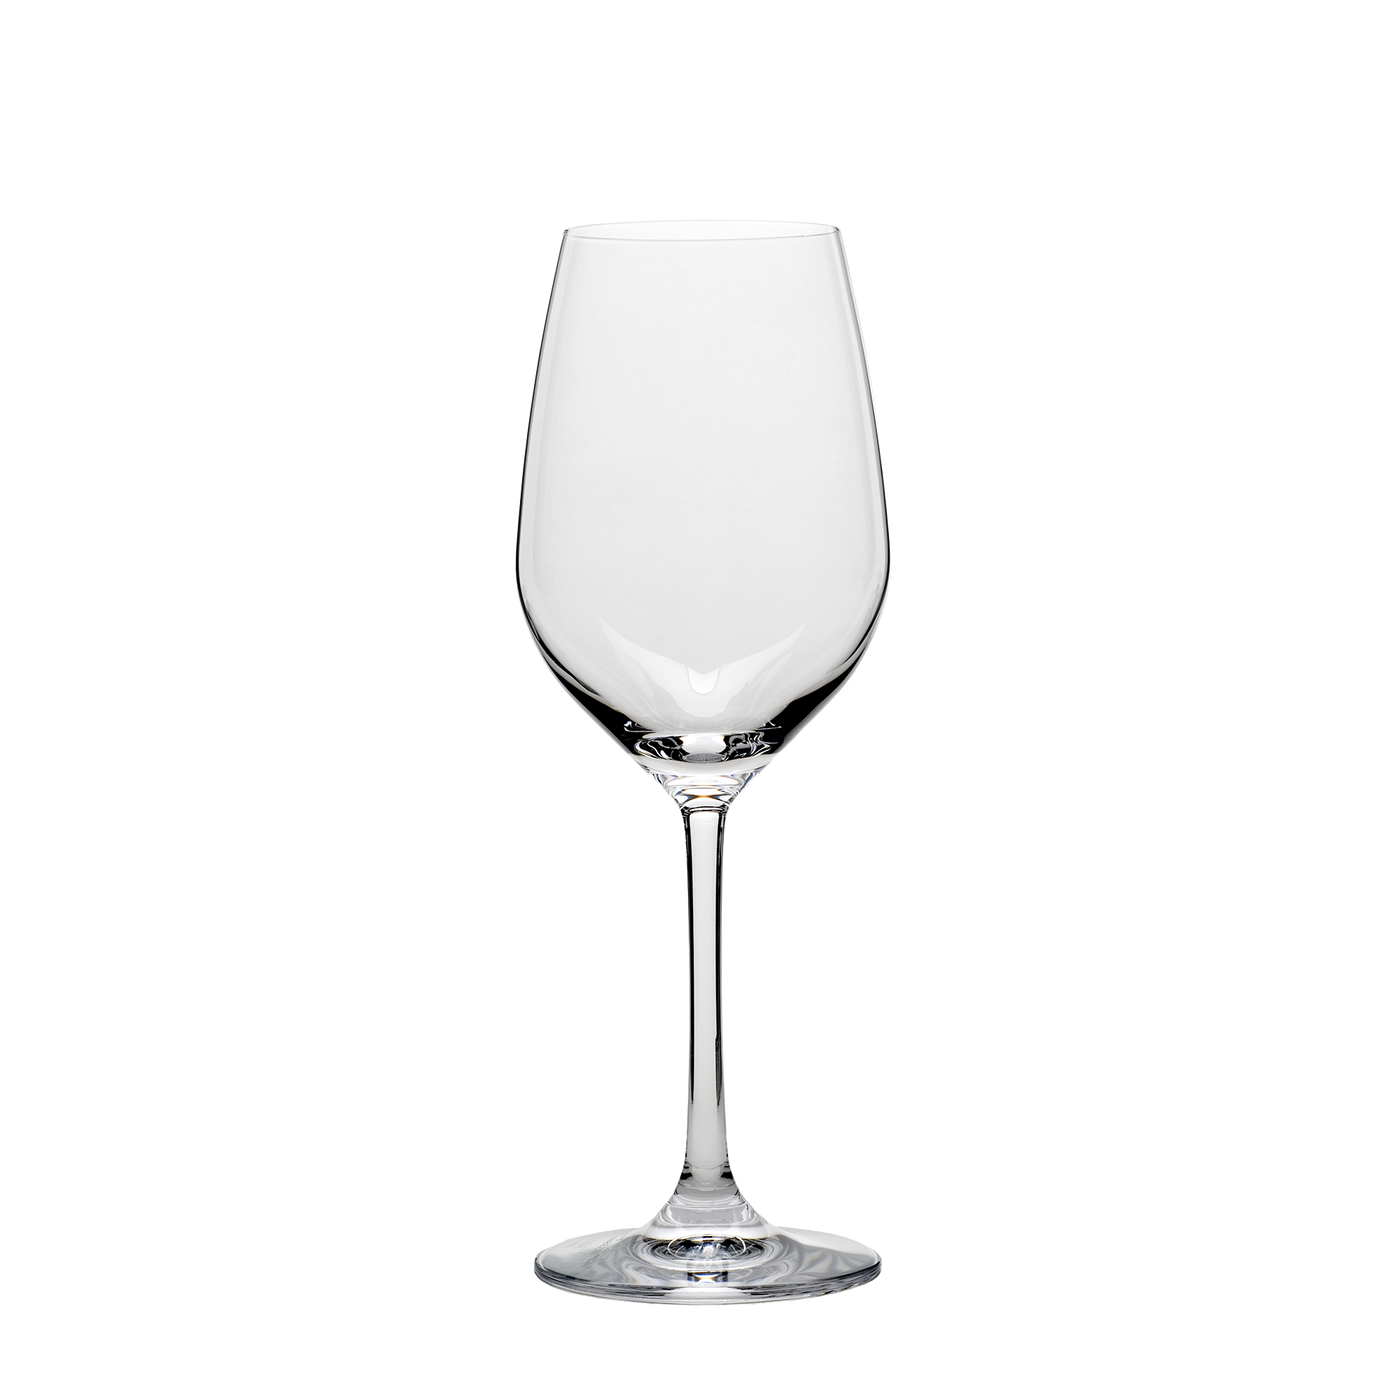 Grand Epicurean White Wine Glass 9 1⁄2 oz - Set of four.